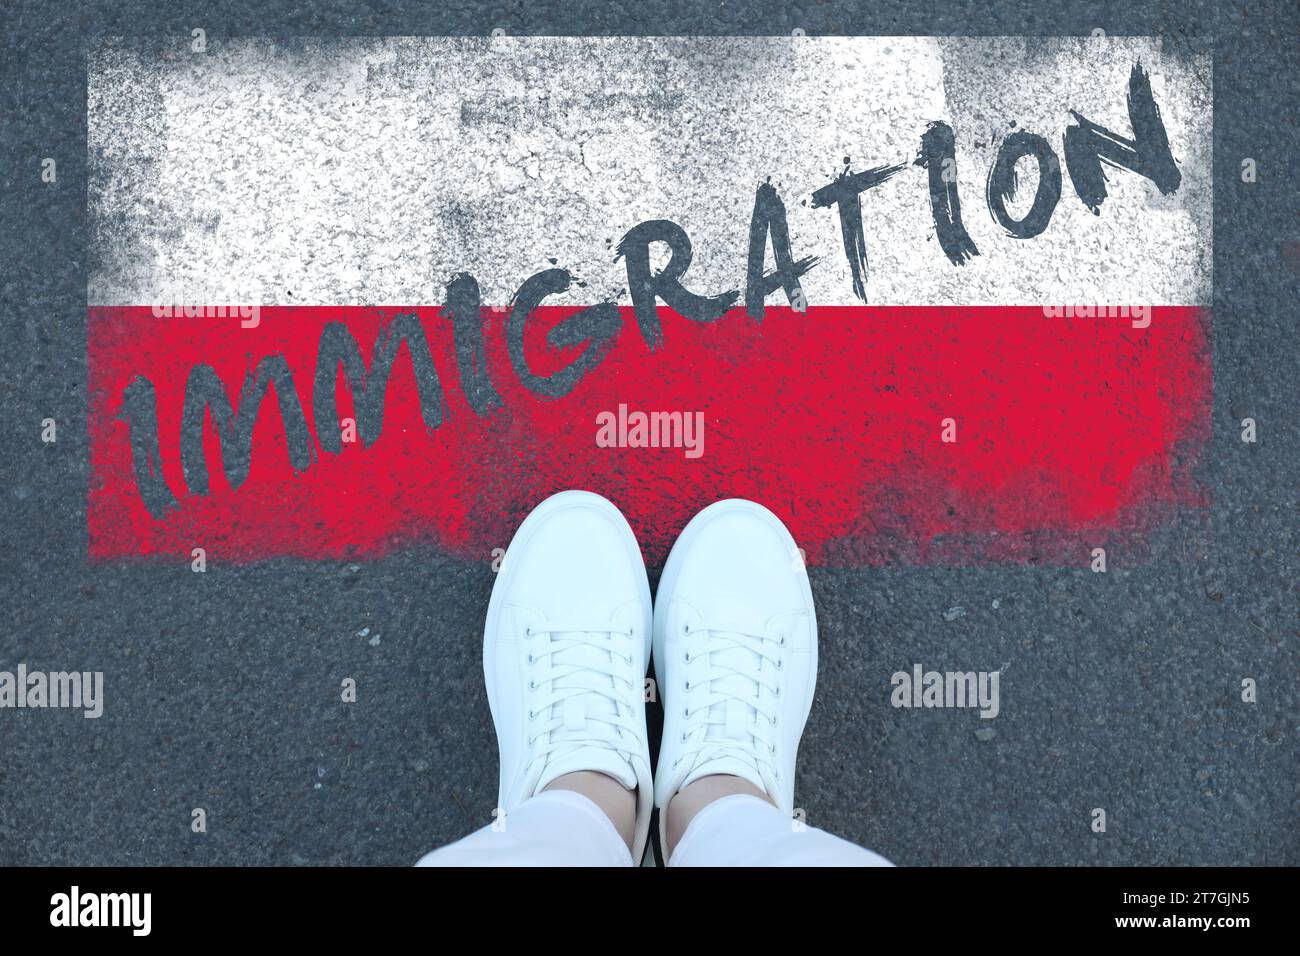 Immigration. Femme debout sur l'asphalte près du drapeau de la Pologne, vue de dessus Banque D'Images